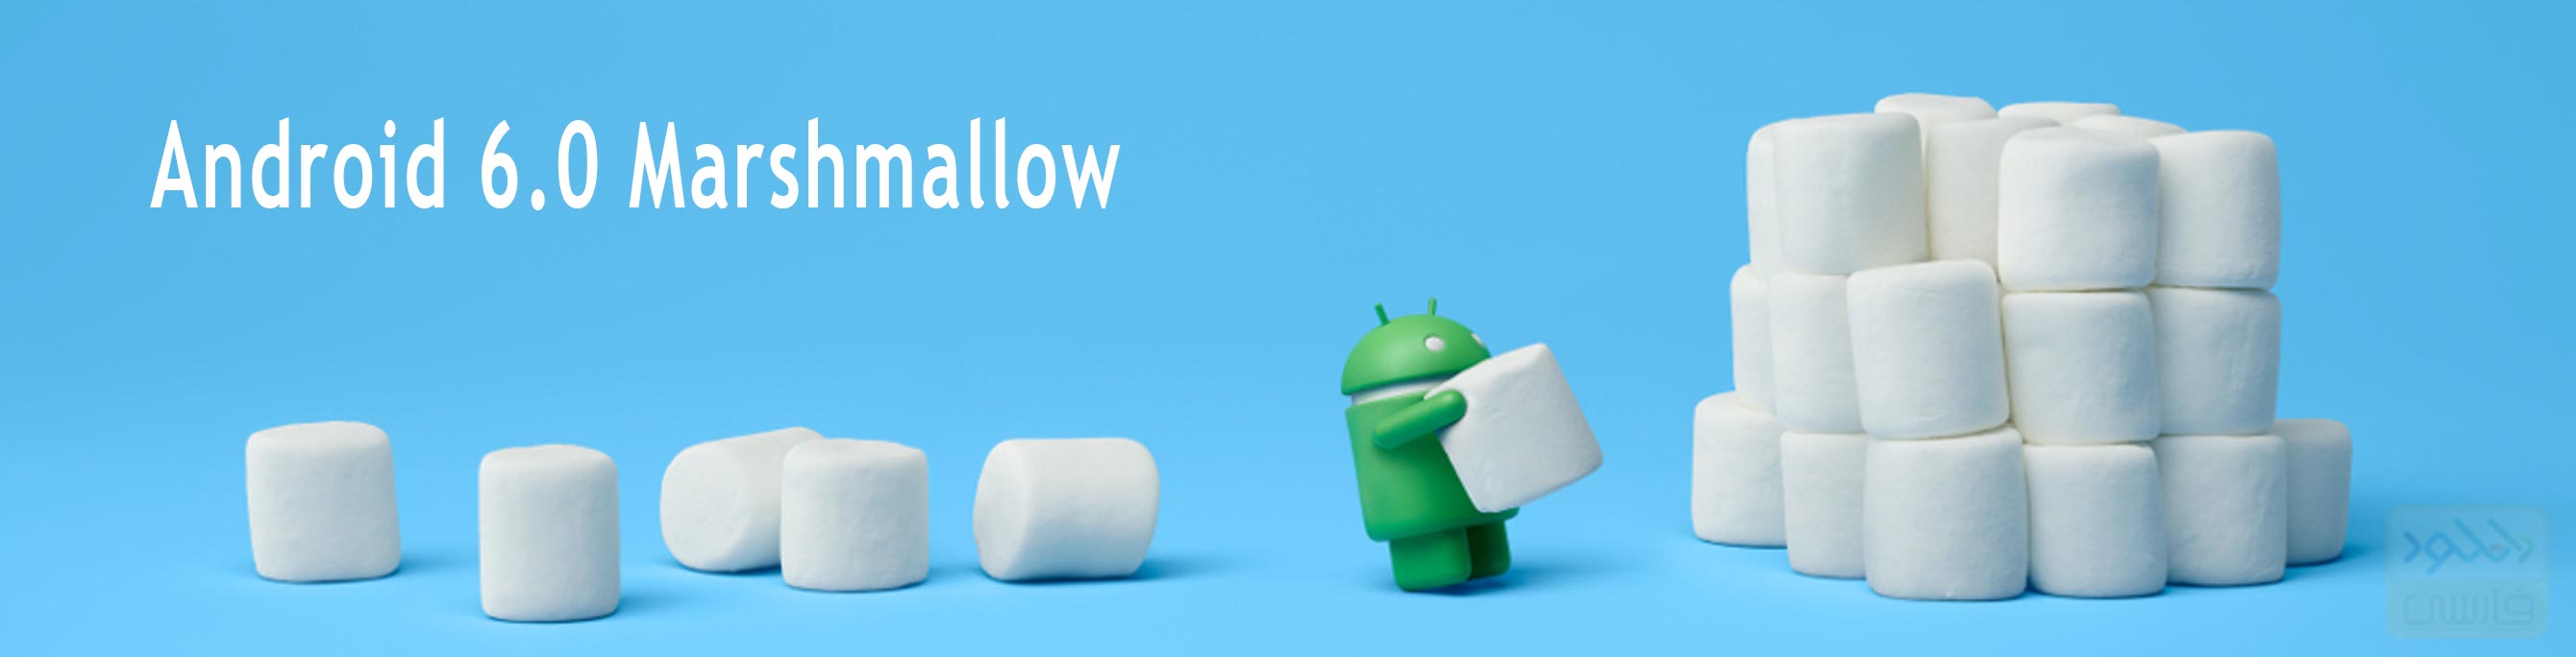 دانلود نسخه نهایی Android 6.0 Marshmallow برای تمامی گوشی های اندروید